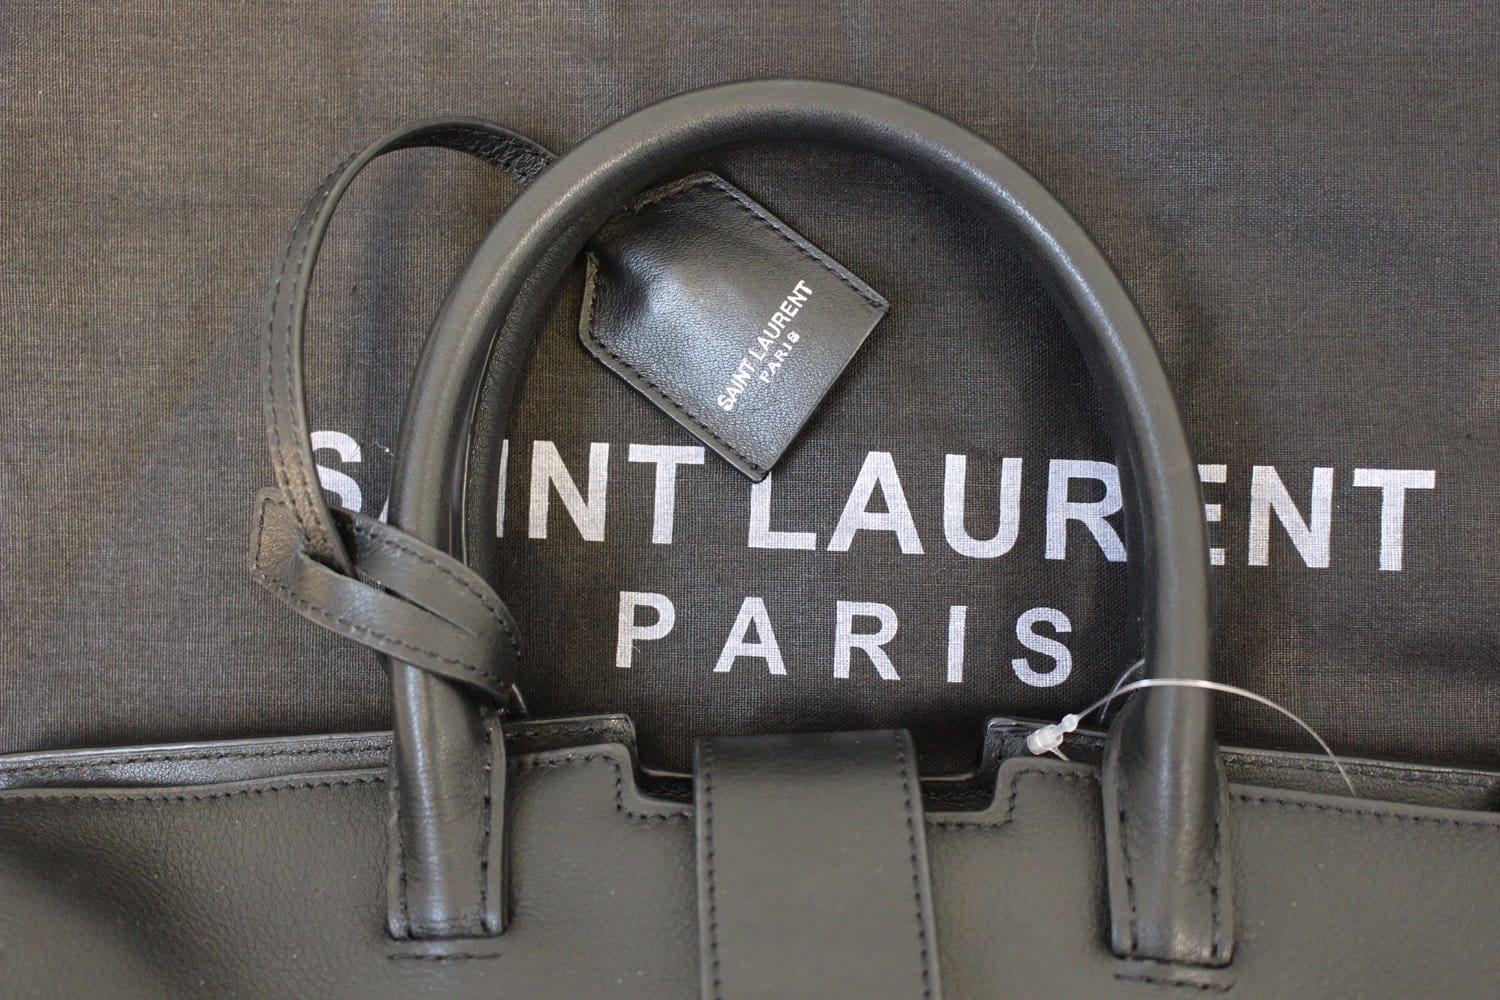 Yves Saint Laurent, Bags, Ysl Saint Laurent Baby Downtown Cabas Bag